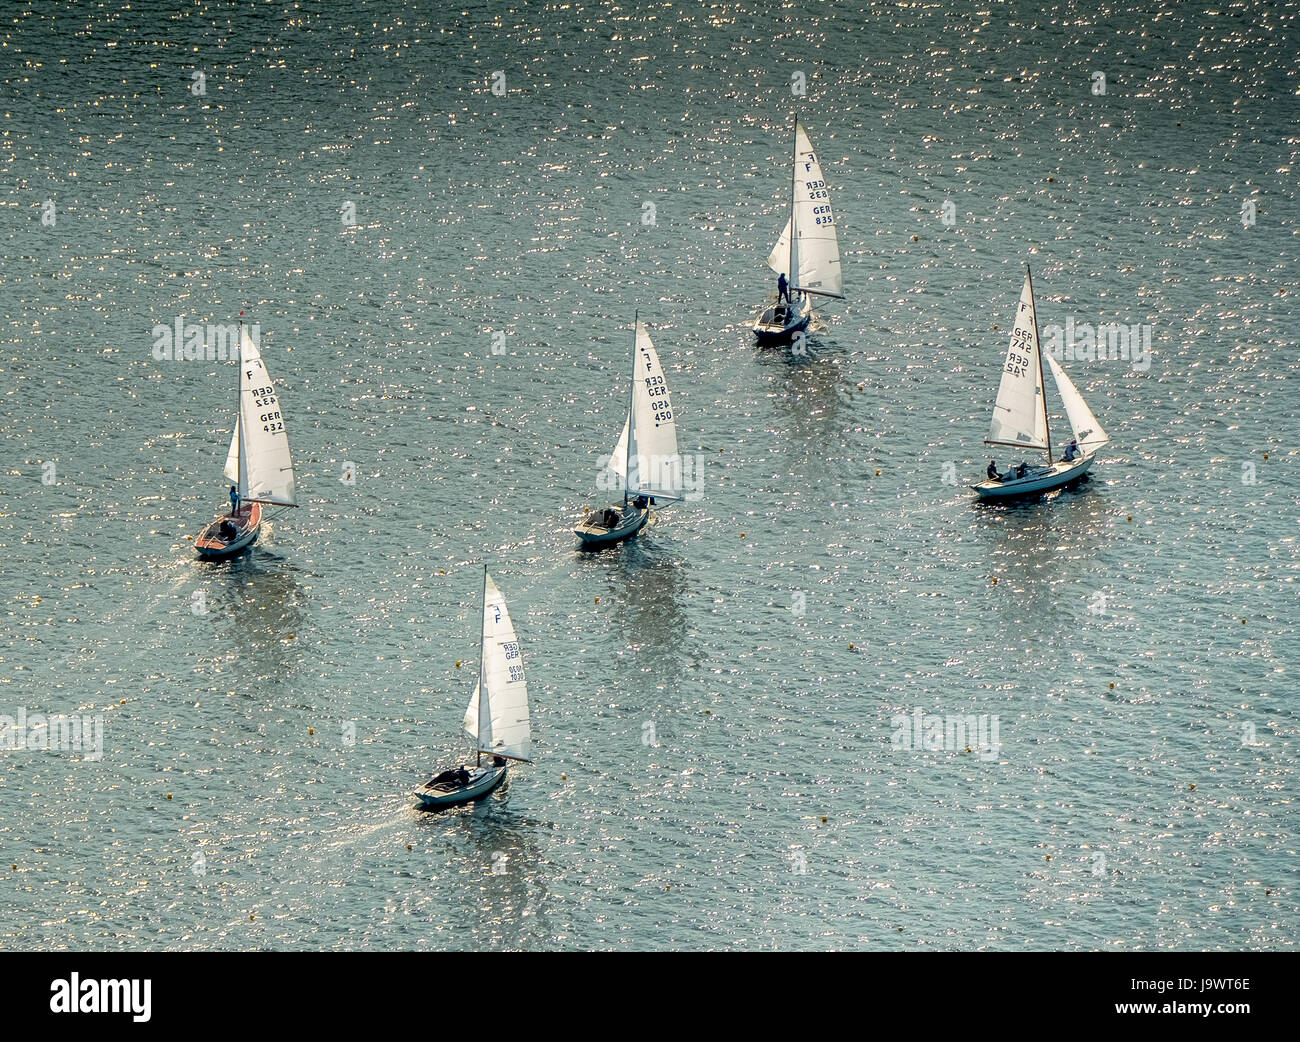 Regata a vela sul lago di Baldeney, barche a vela, Essen, la zona della Ruhr, Nord Reno-Westfalia, Germania Foto Stock